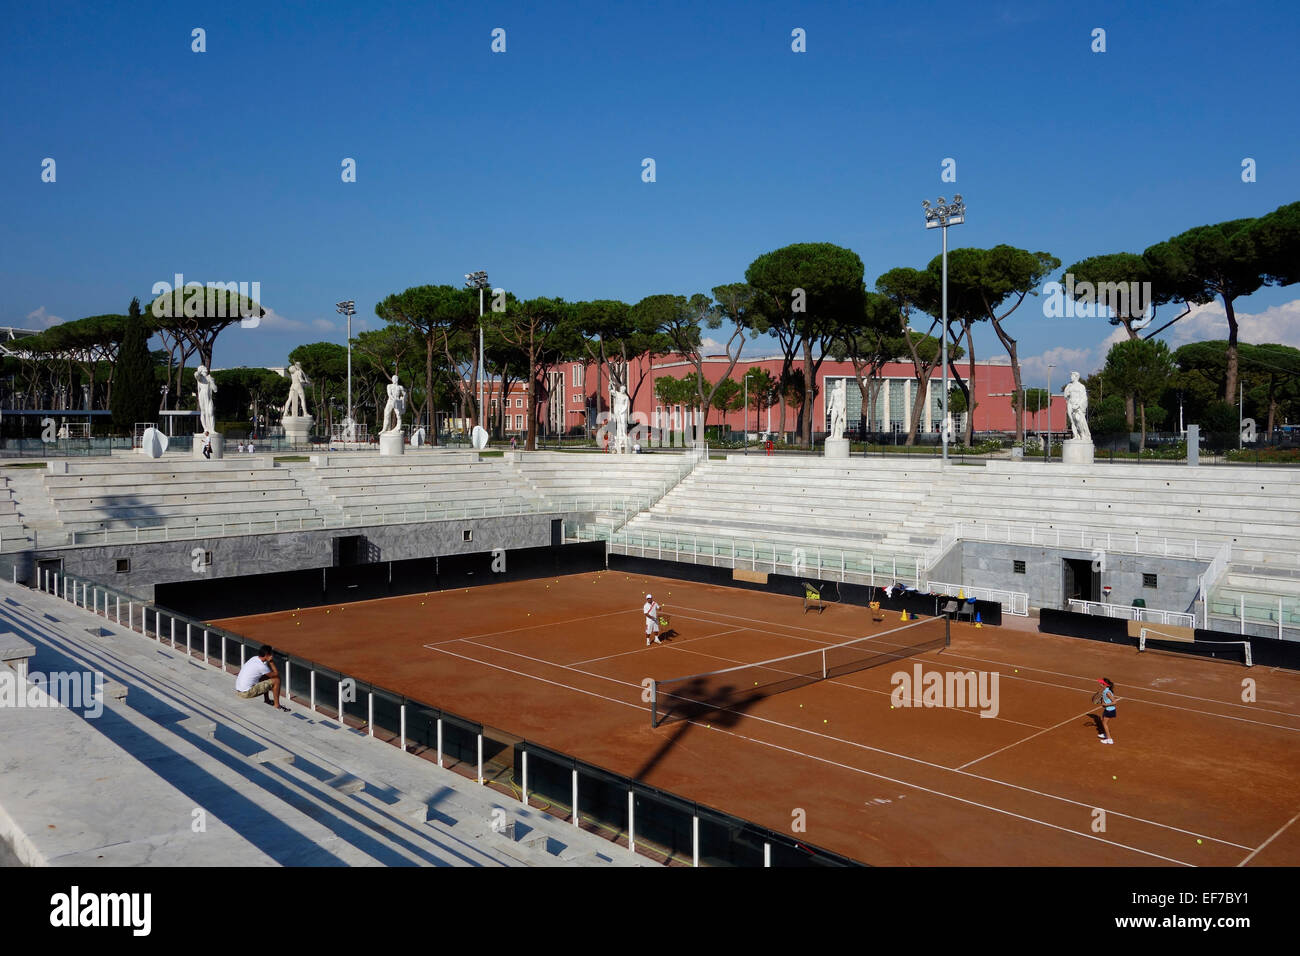 Tennis Courts Stadio dei Marmi Foro Italico Rome Italy Stock Photo - Alamy